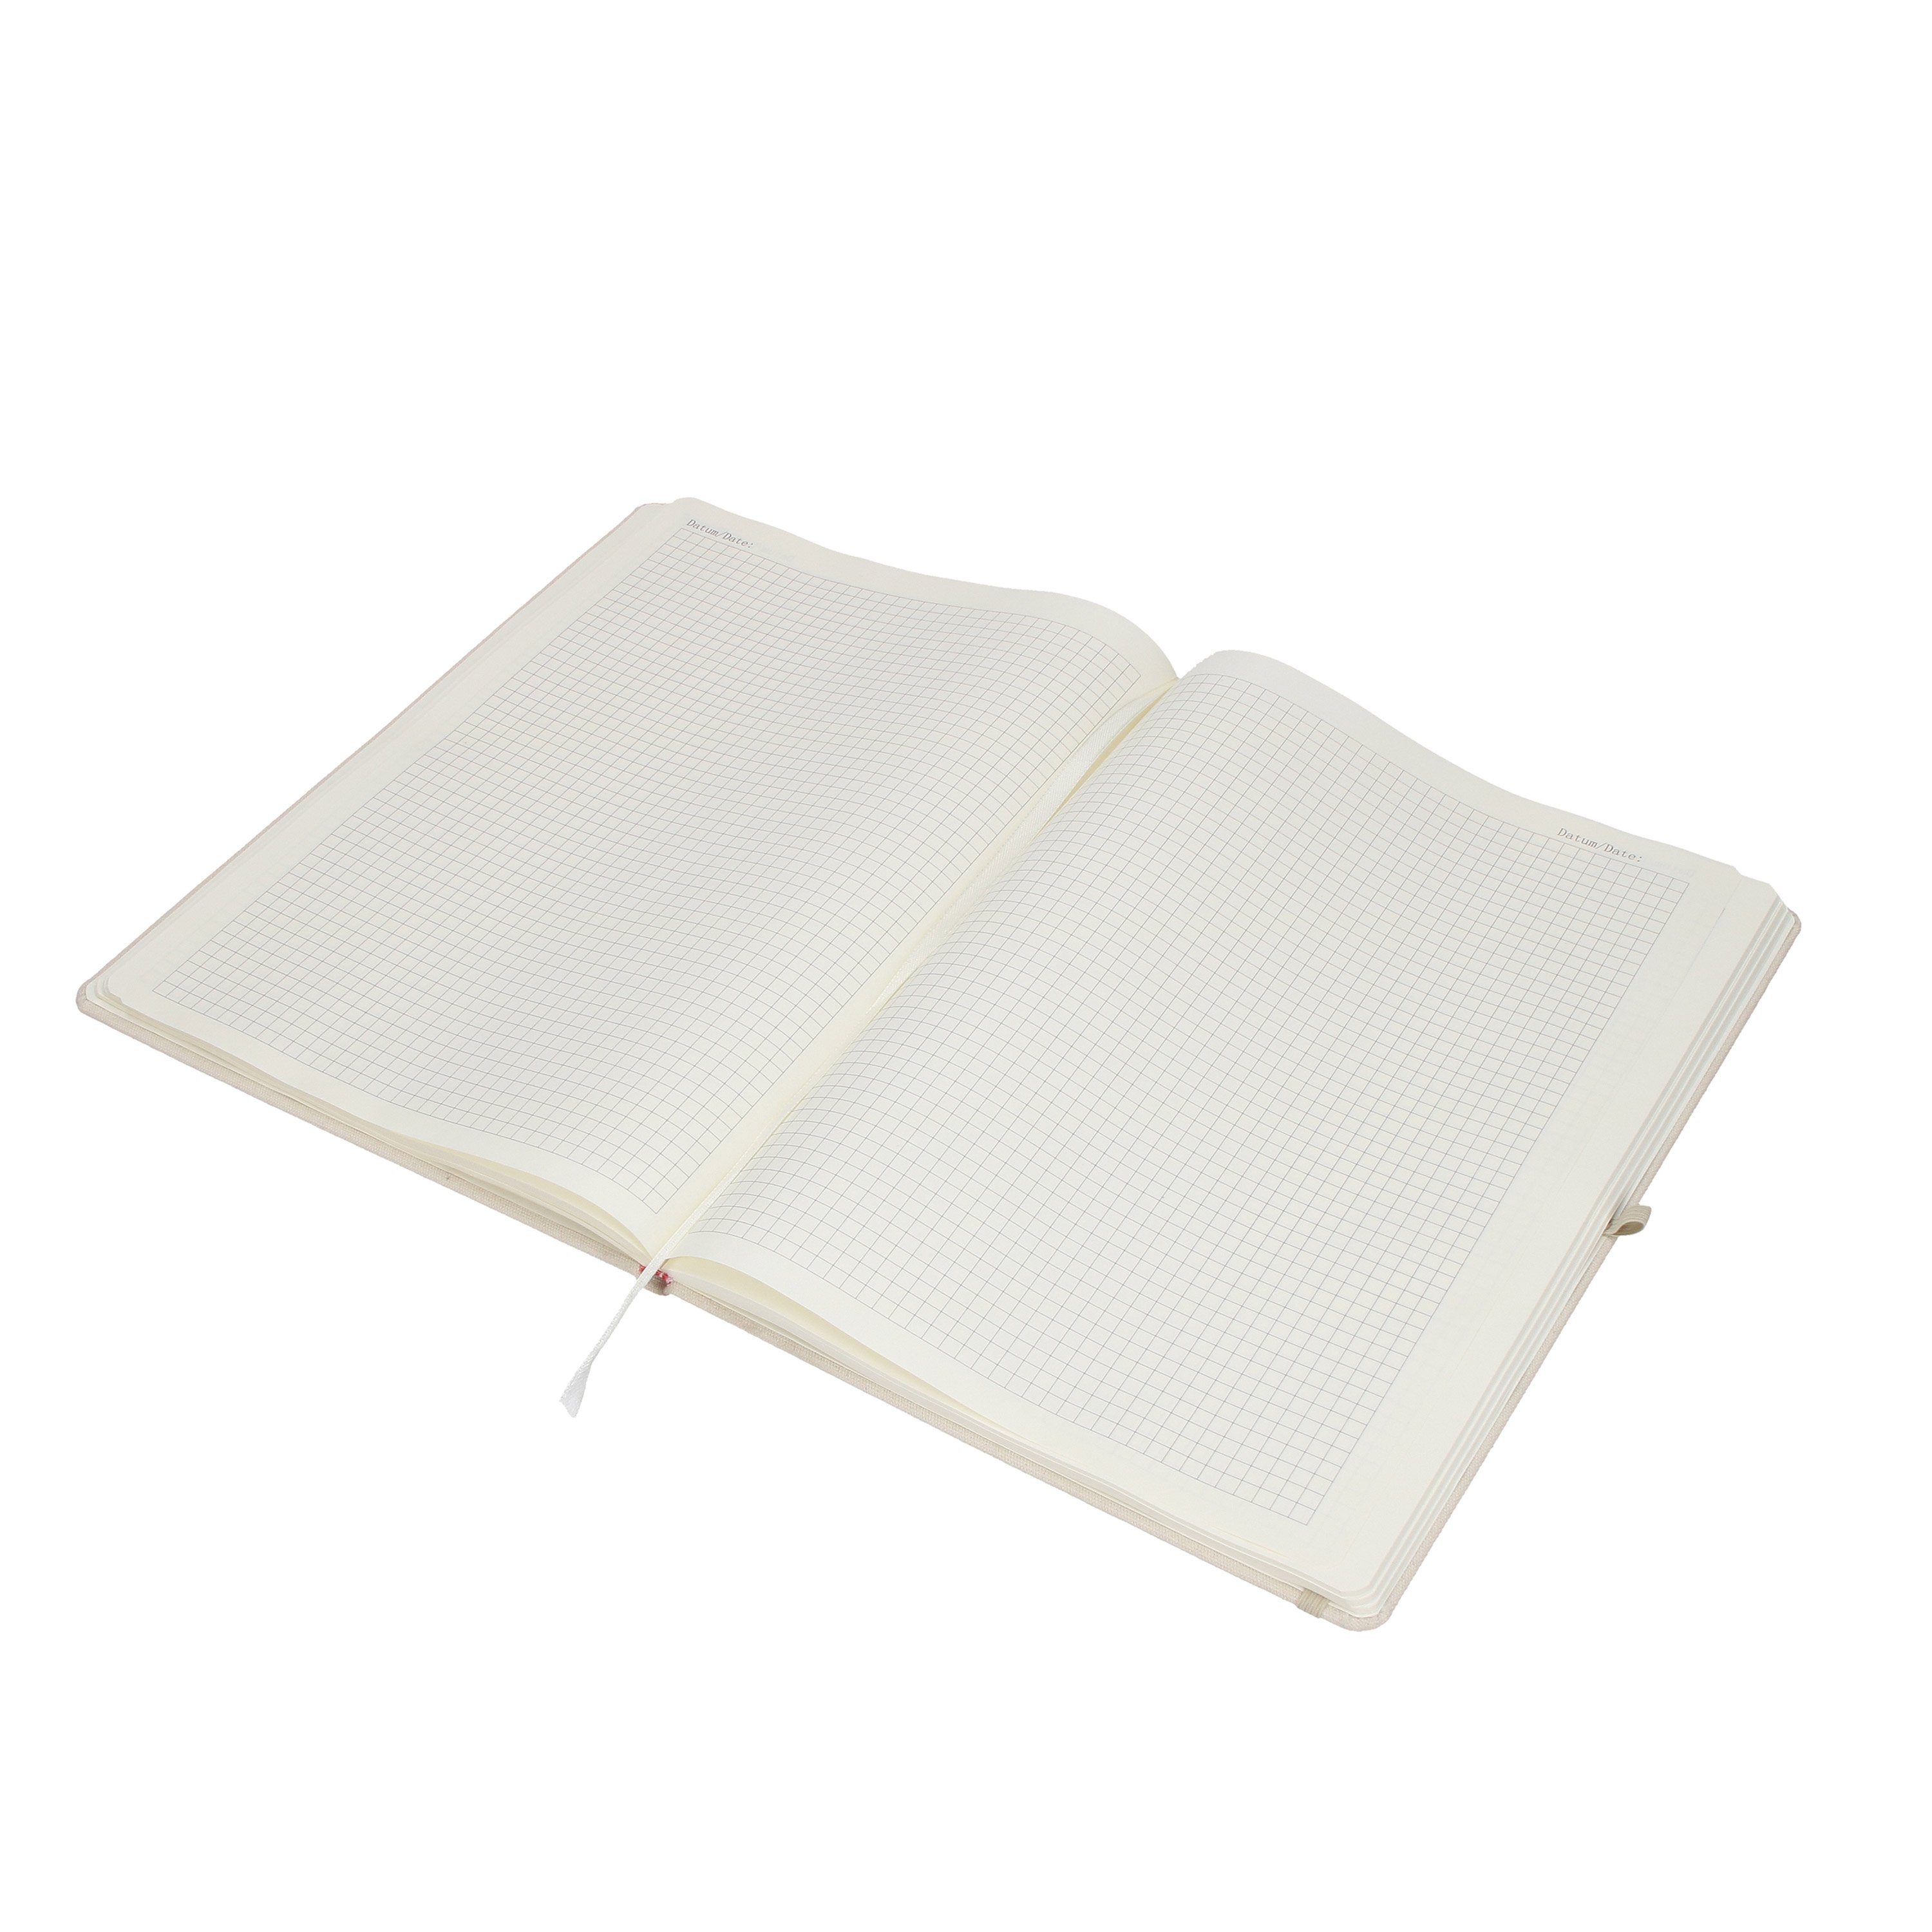 & Schmuckverkäufer Mr. Tagebuch, - aus Leidenschaft Panda Mrs. Mr. Notizbuch Mrs. & Transparent - Panda Geschenk,